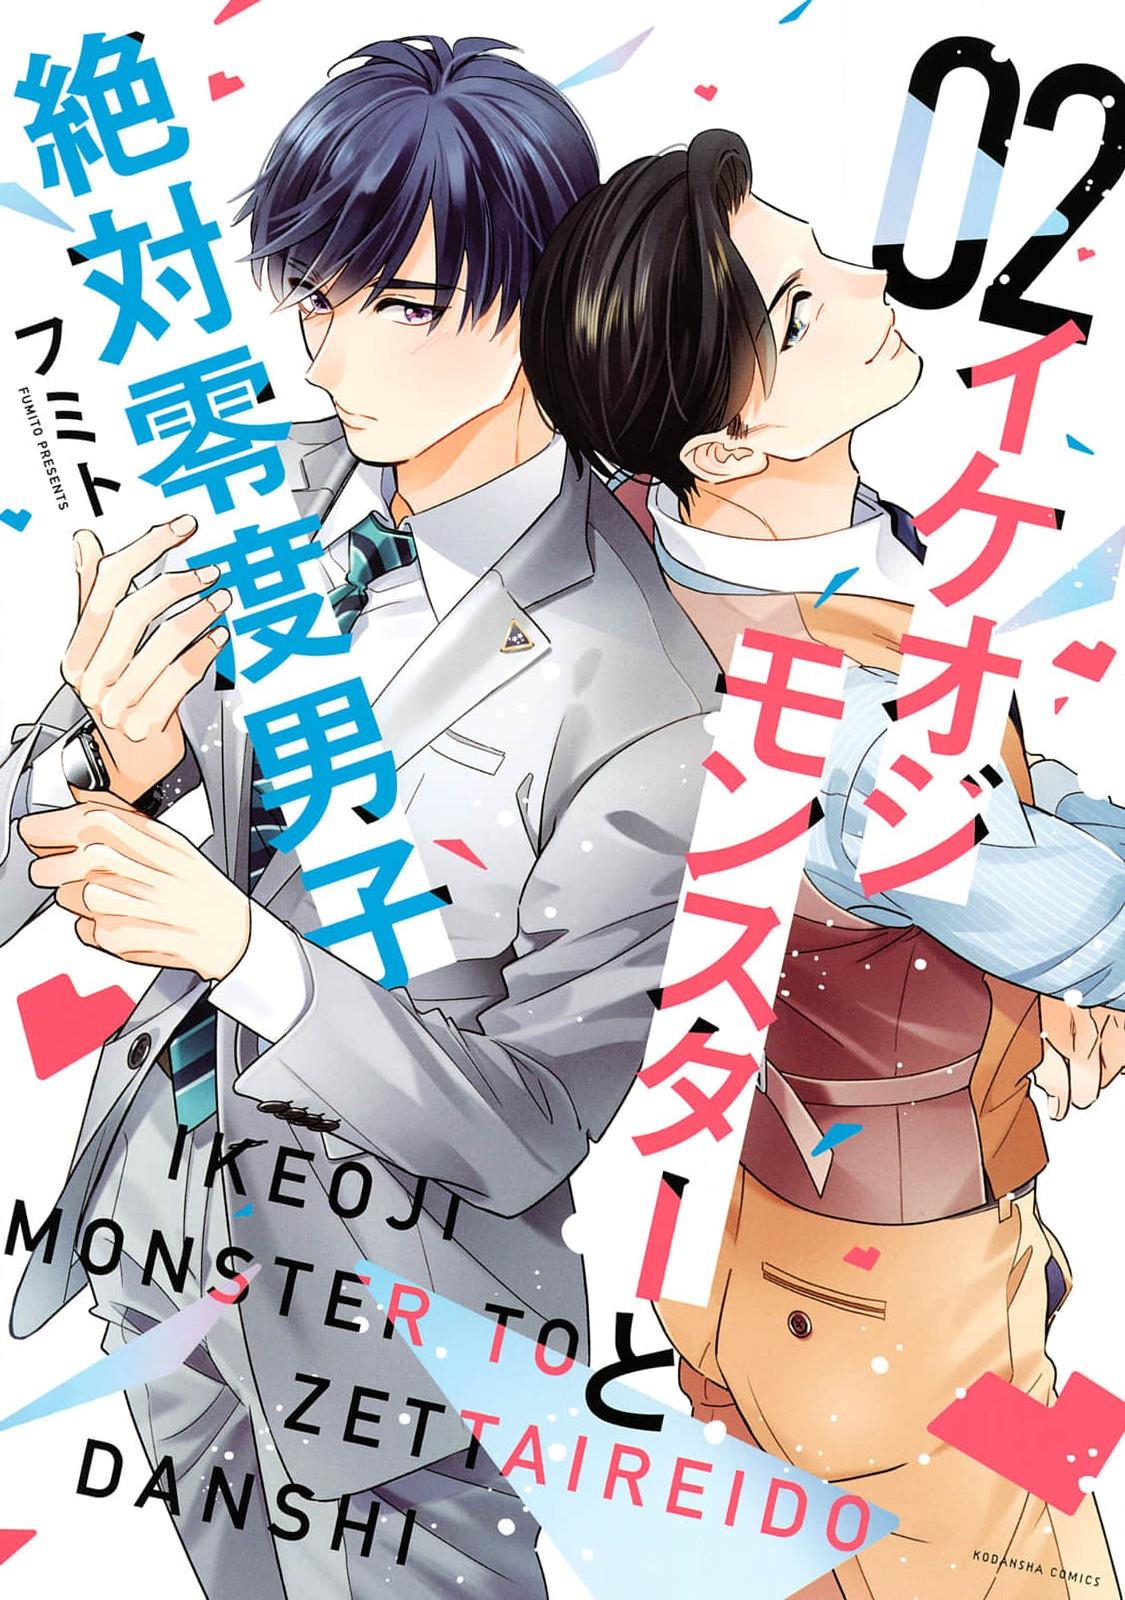 Ikeoji Monster To Zettai Reido Danshi - Page 1